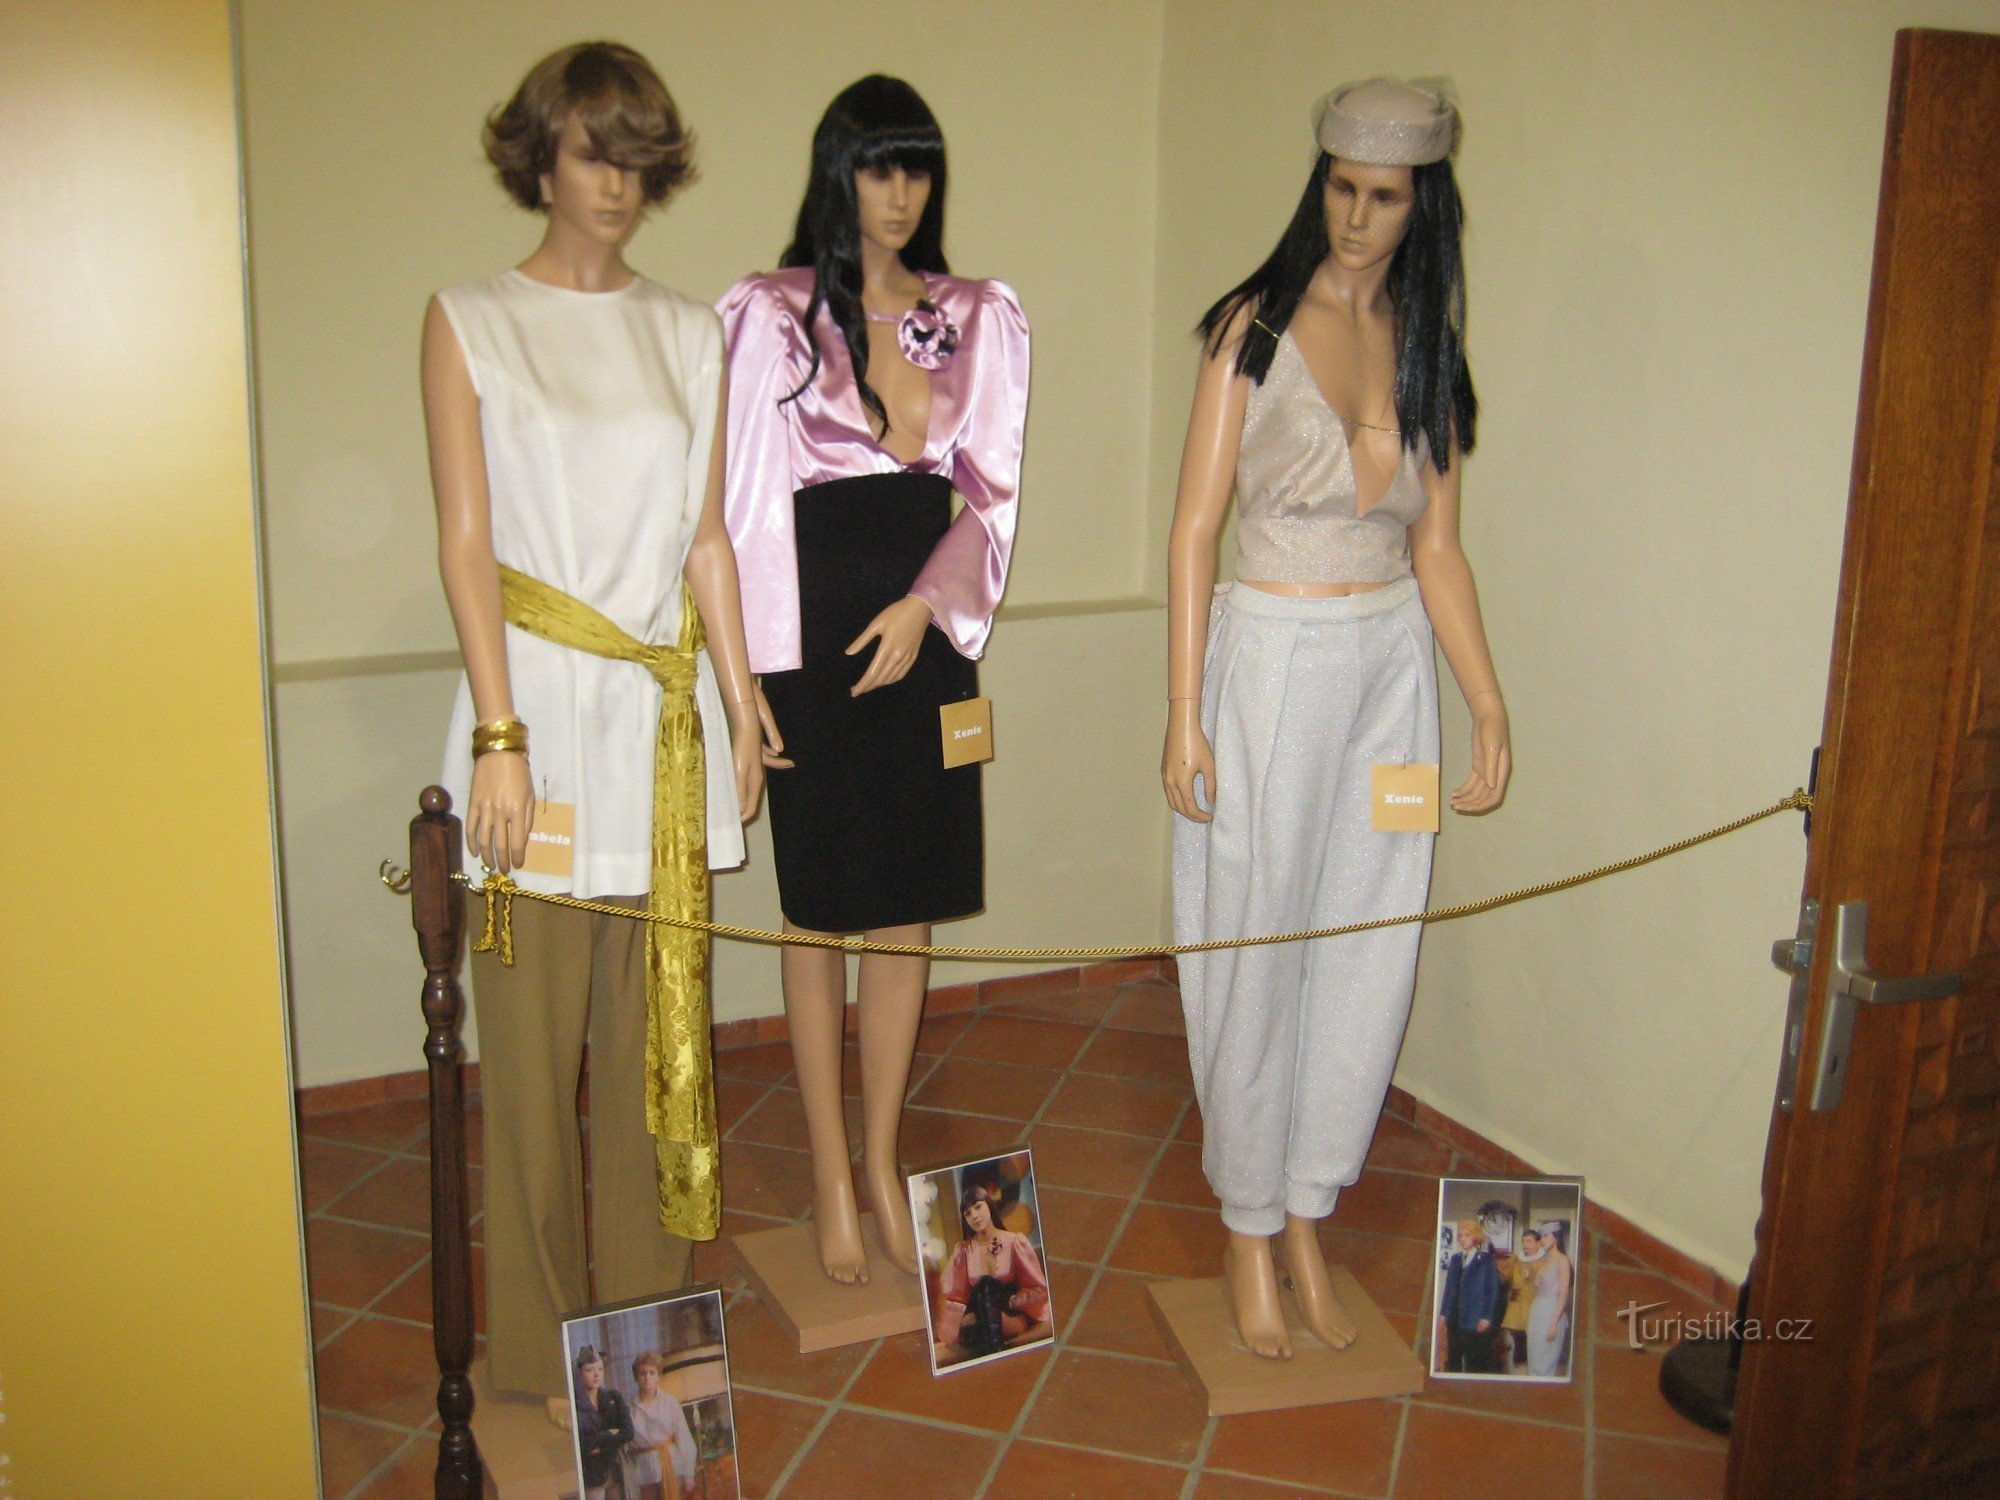 Арабелла - виставка костюмів із серіалу - Музей Соколова